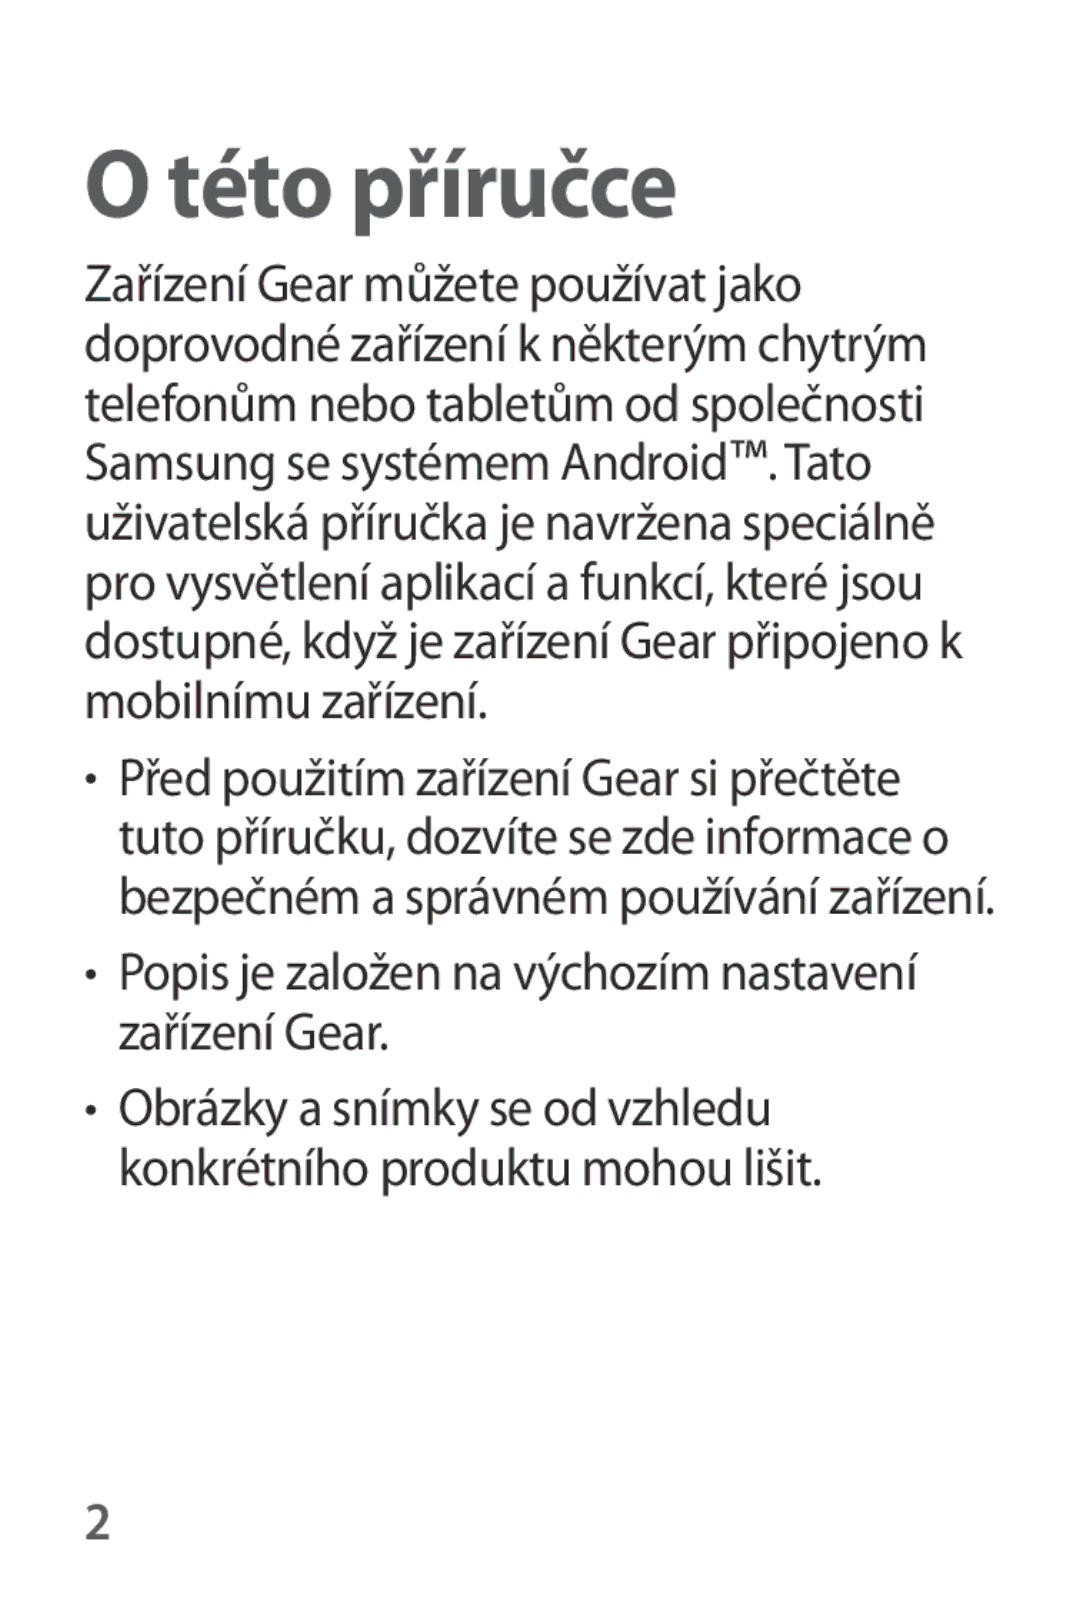 Samsung SM-V7000ZKAATO, SM-V7000ZKAXEO, SM-V7000ZKAEUR Této příručce, Popis je založen na výchozím nastavení zařízení Gear 